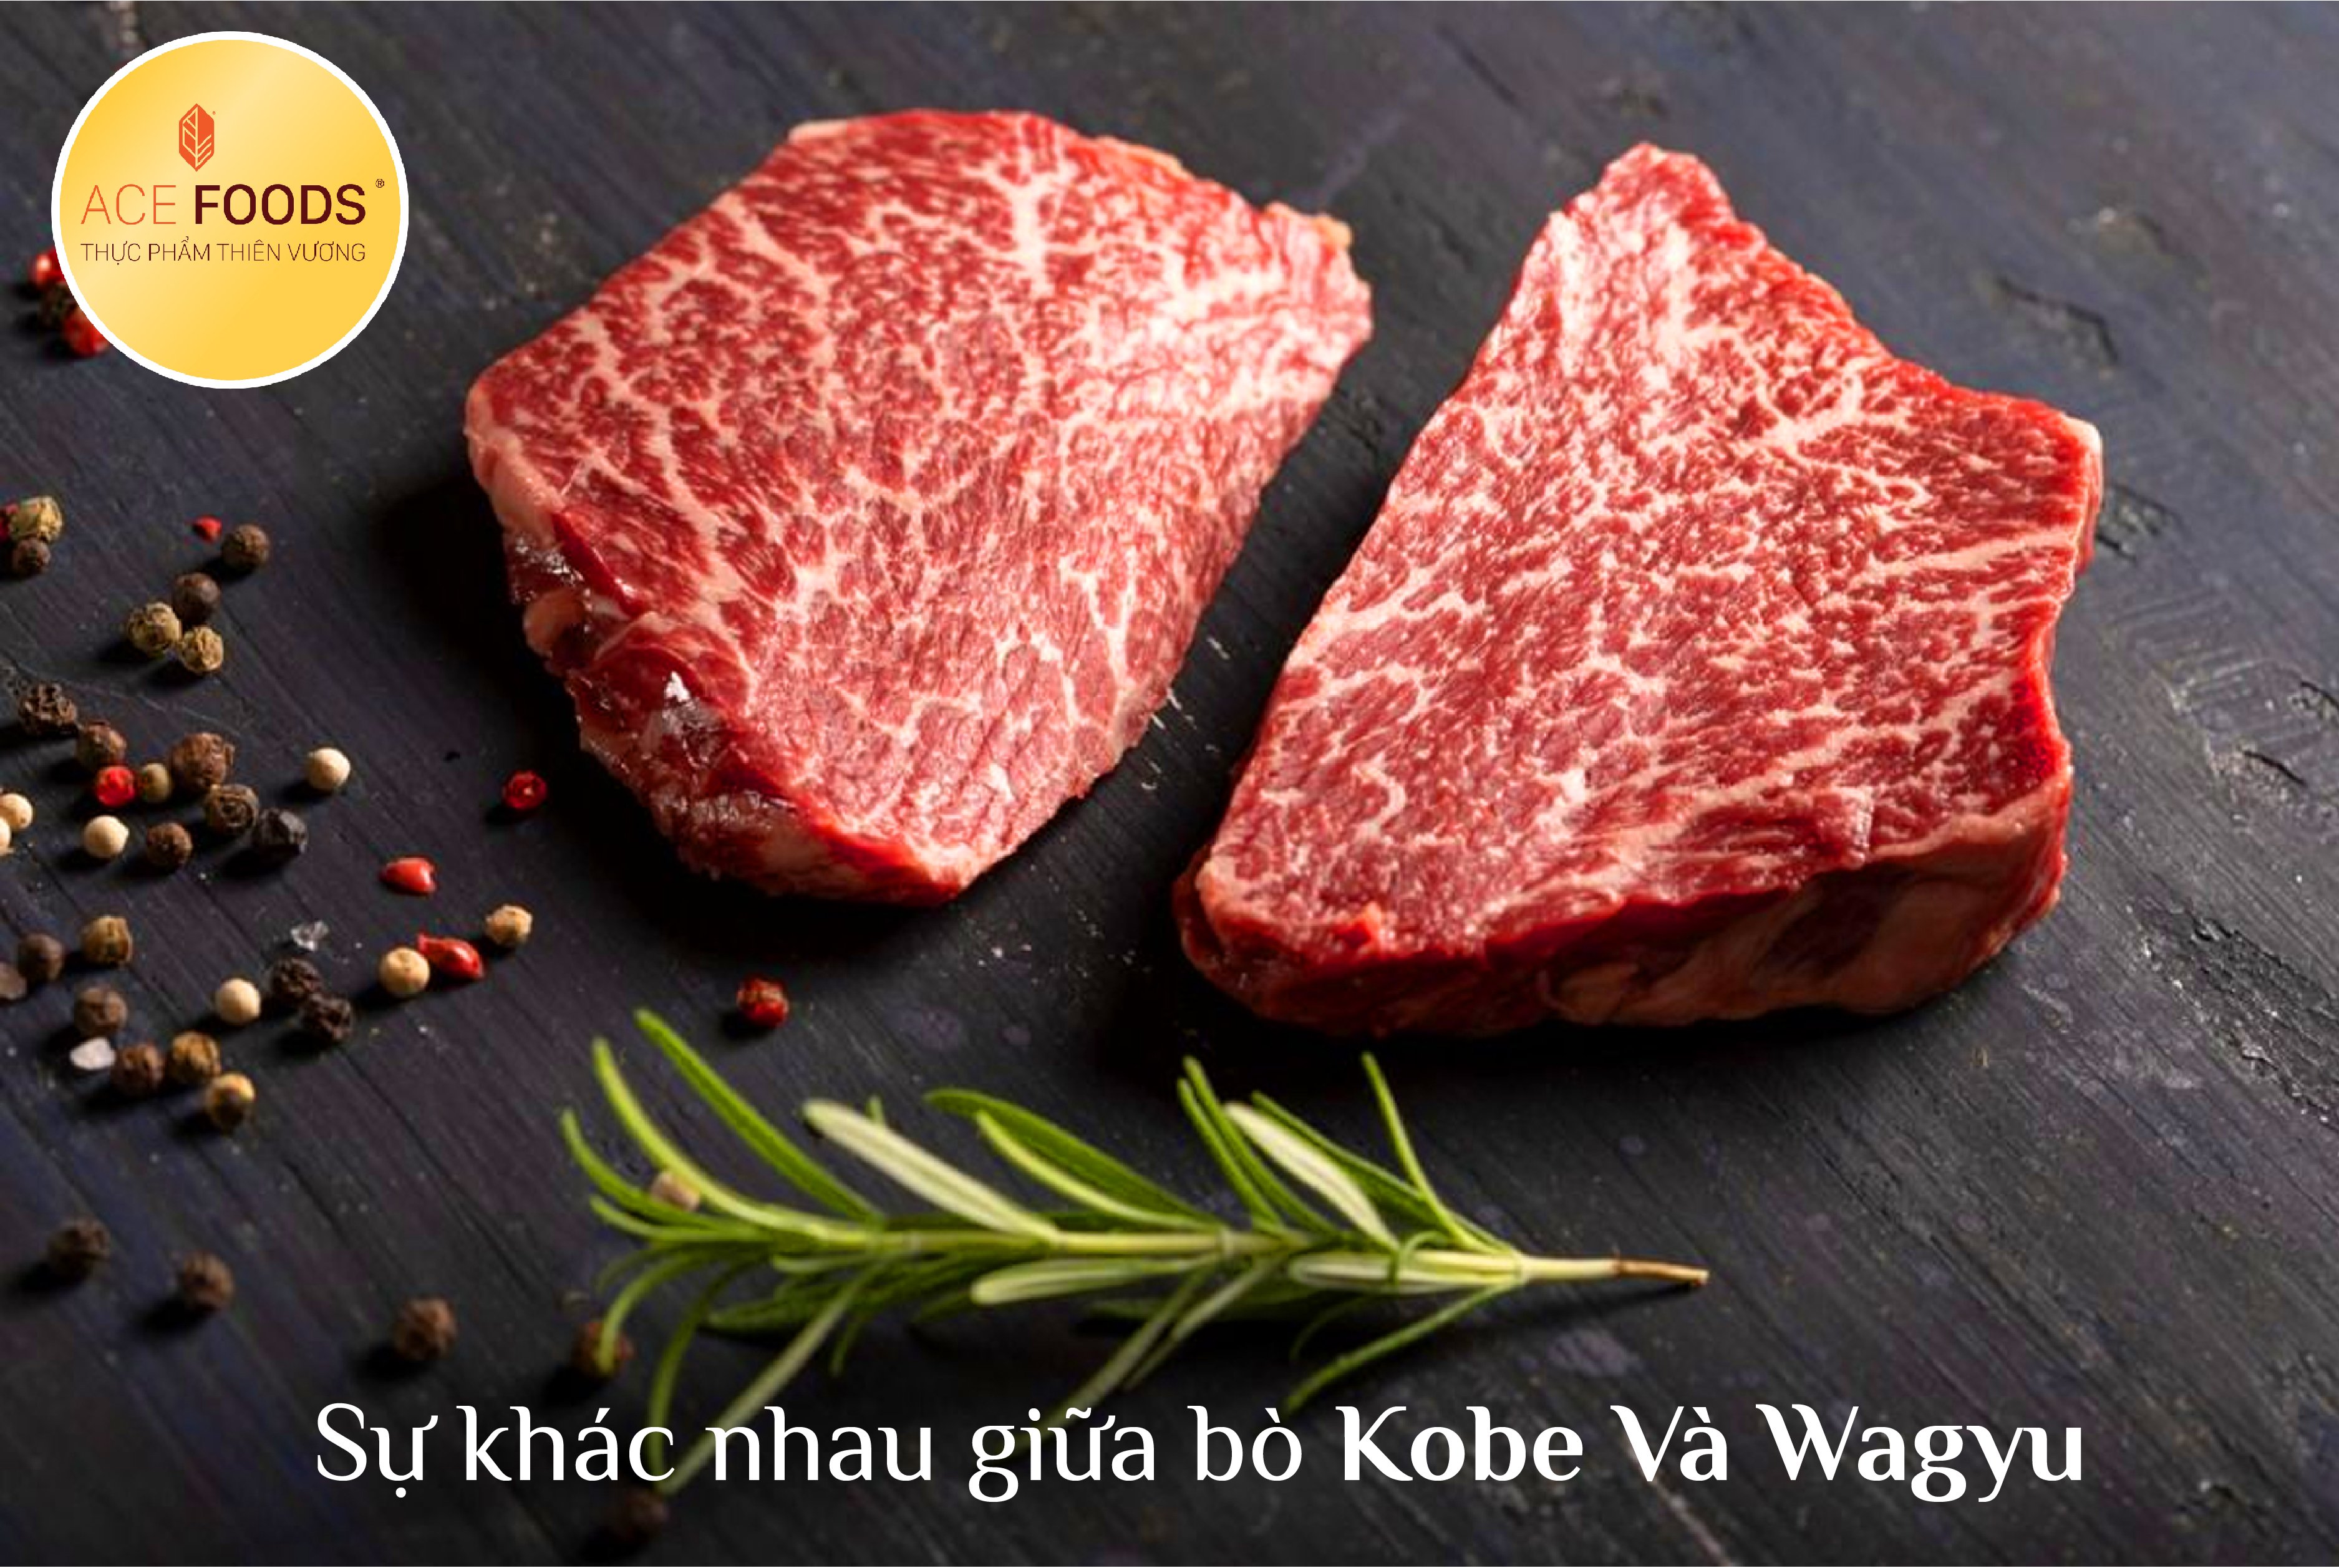 Sự khác nhau giữa bò kobe và wagyu